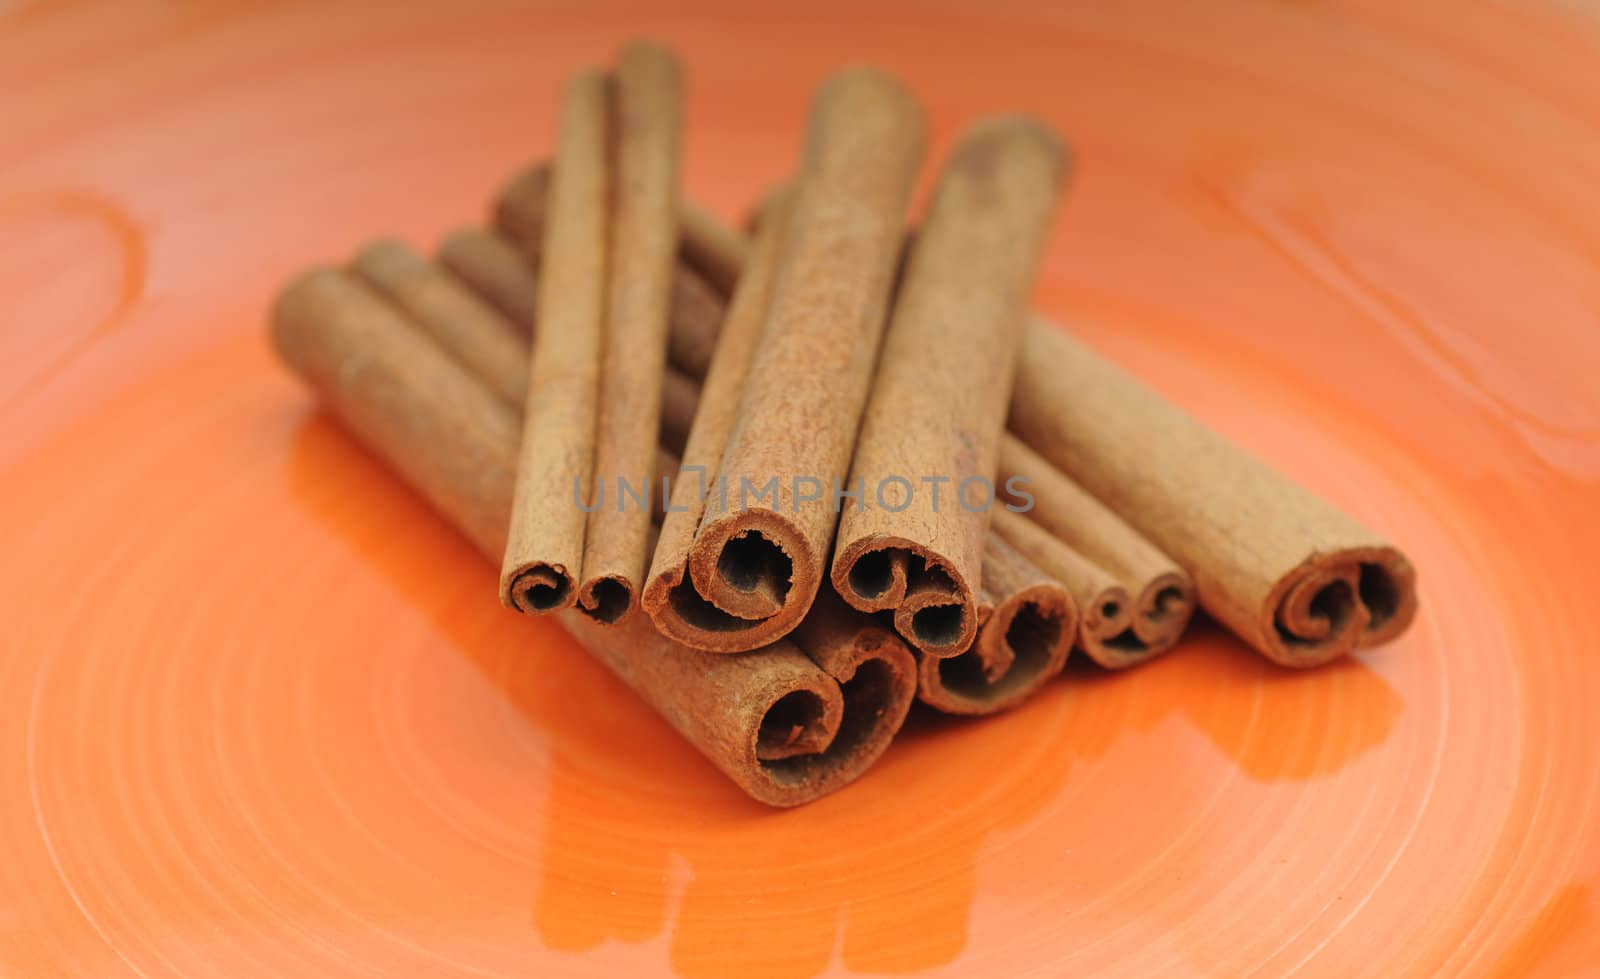 Cinnamon sticks by ftlaudgirl